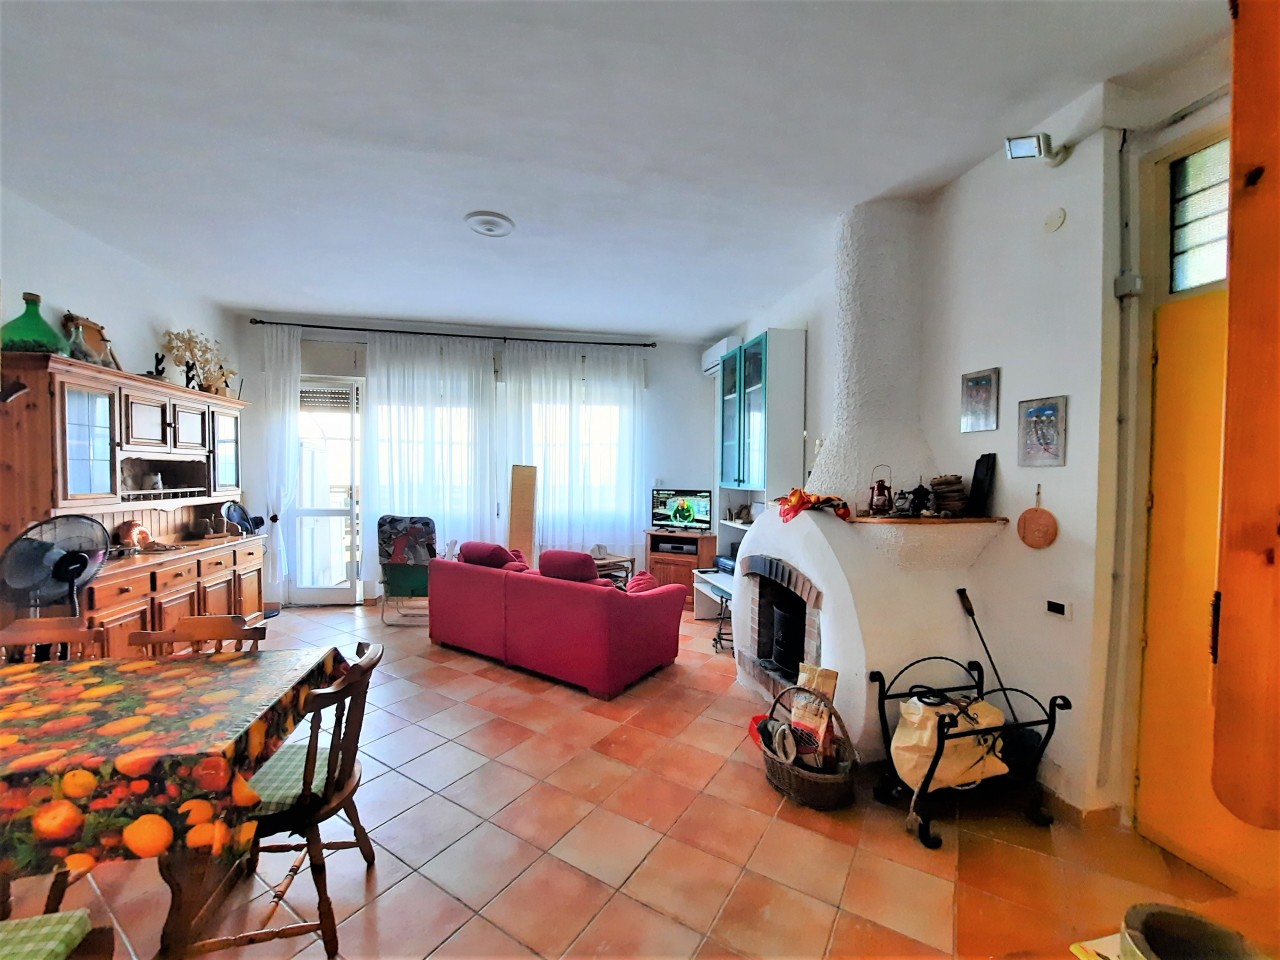 Appartamento in vendita a Civitavecchia, 9999 locali, prezzo € 72.000 | PortaleAgenzieImmobiliari.it